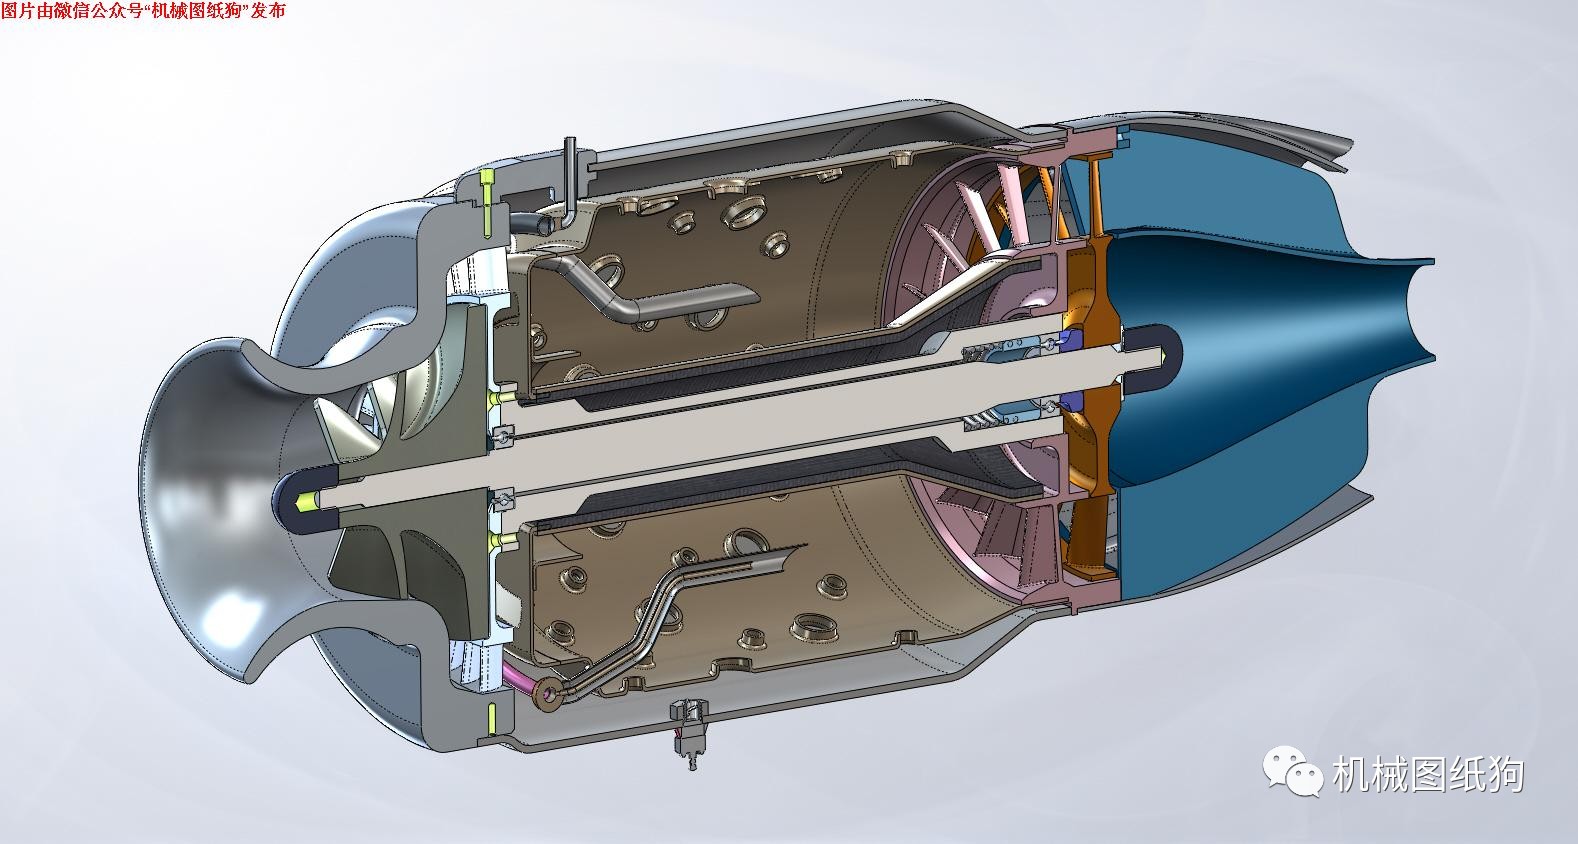 【发动机电机】微型涡喷发动机(涡轮喷气航模油机)3d模型图纸 step